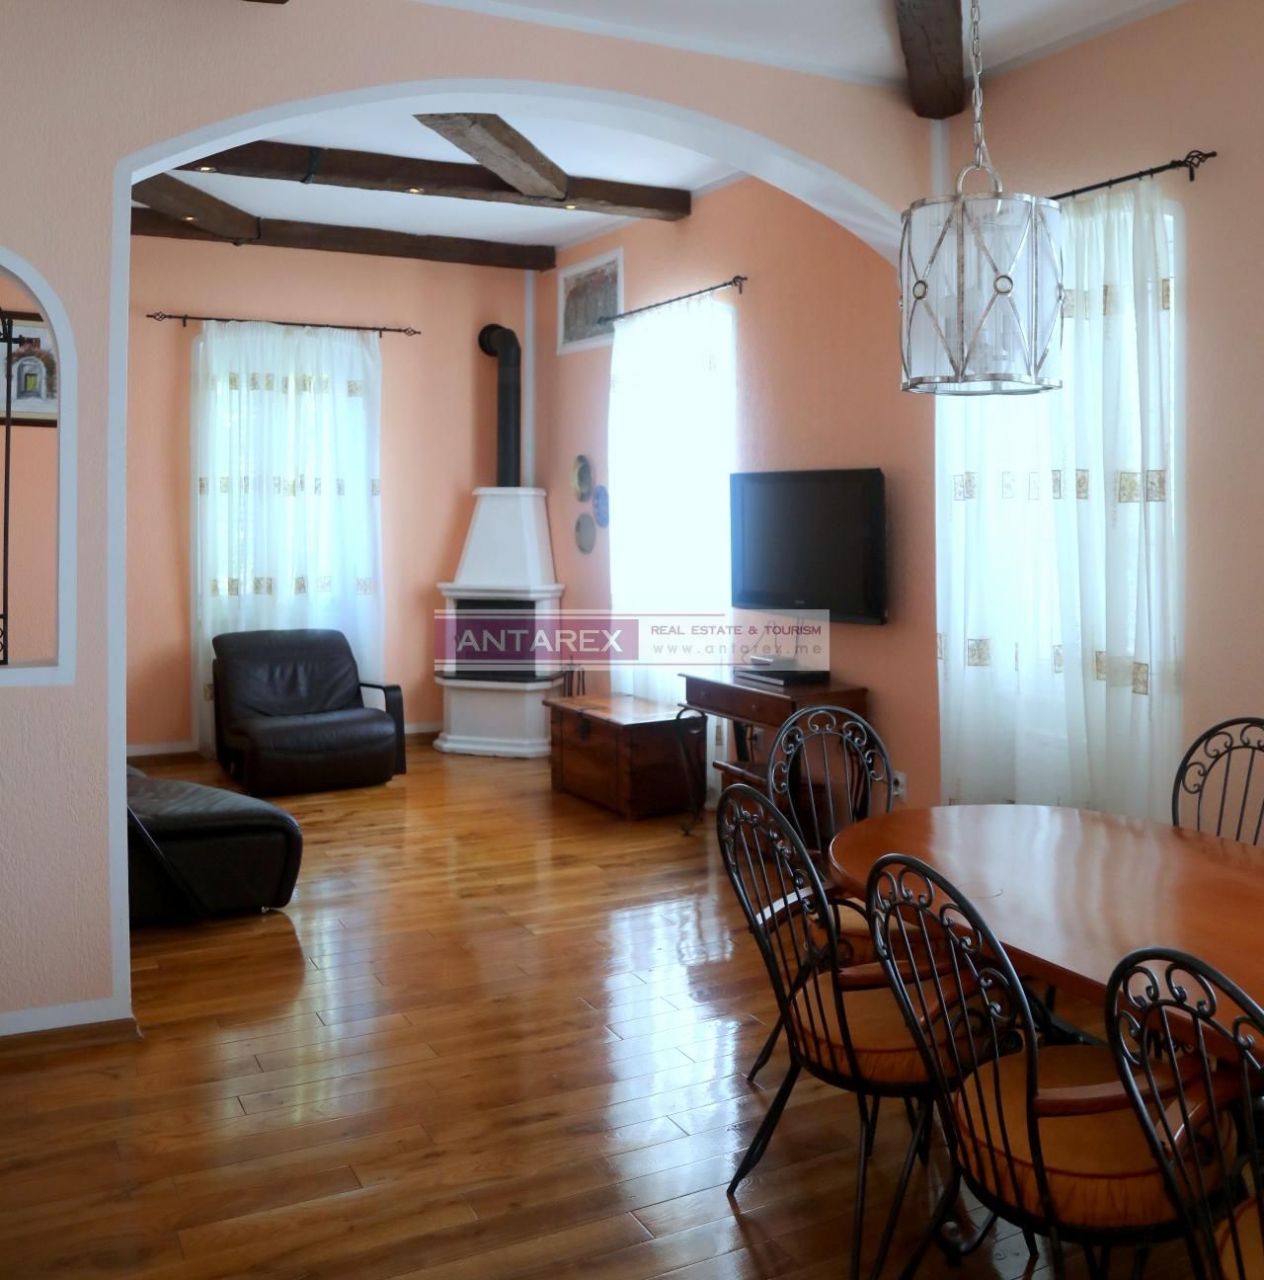 Apartment in Herceg-Novi, Montenegro, 83 m² - picture 1